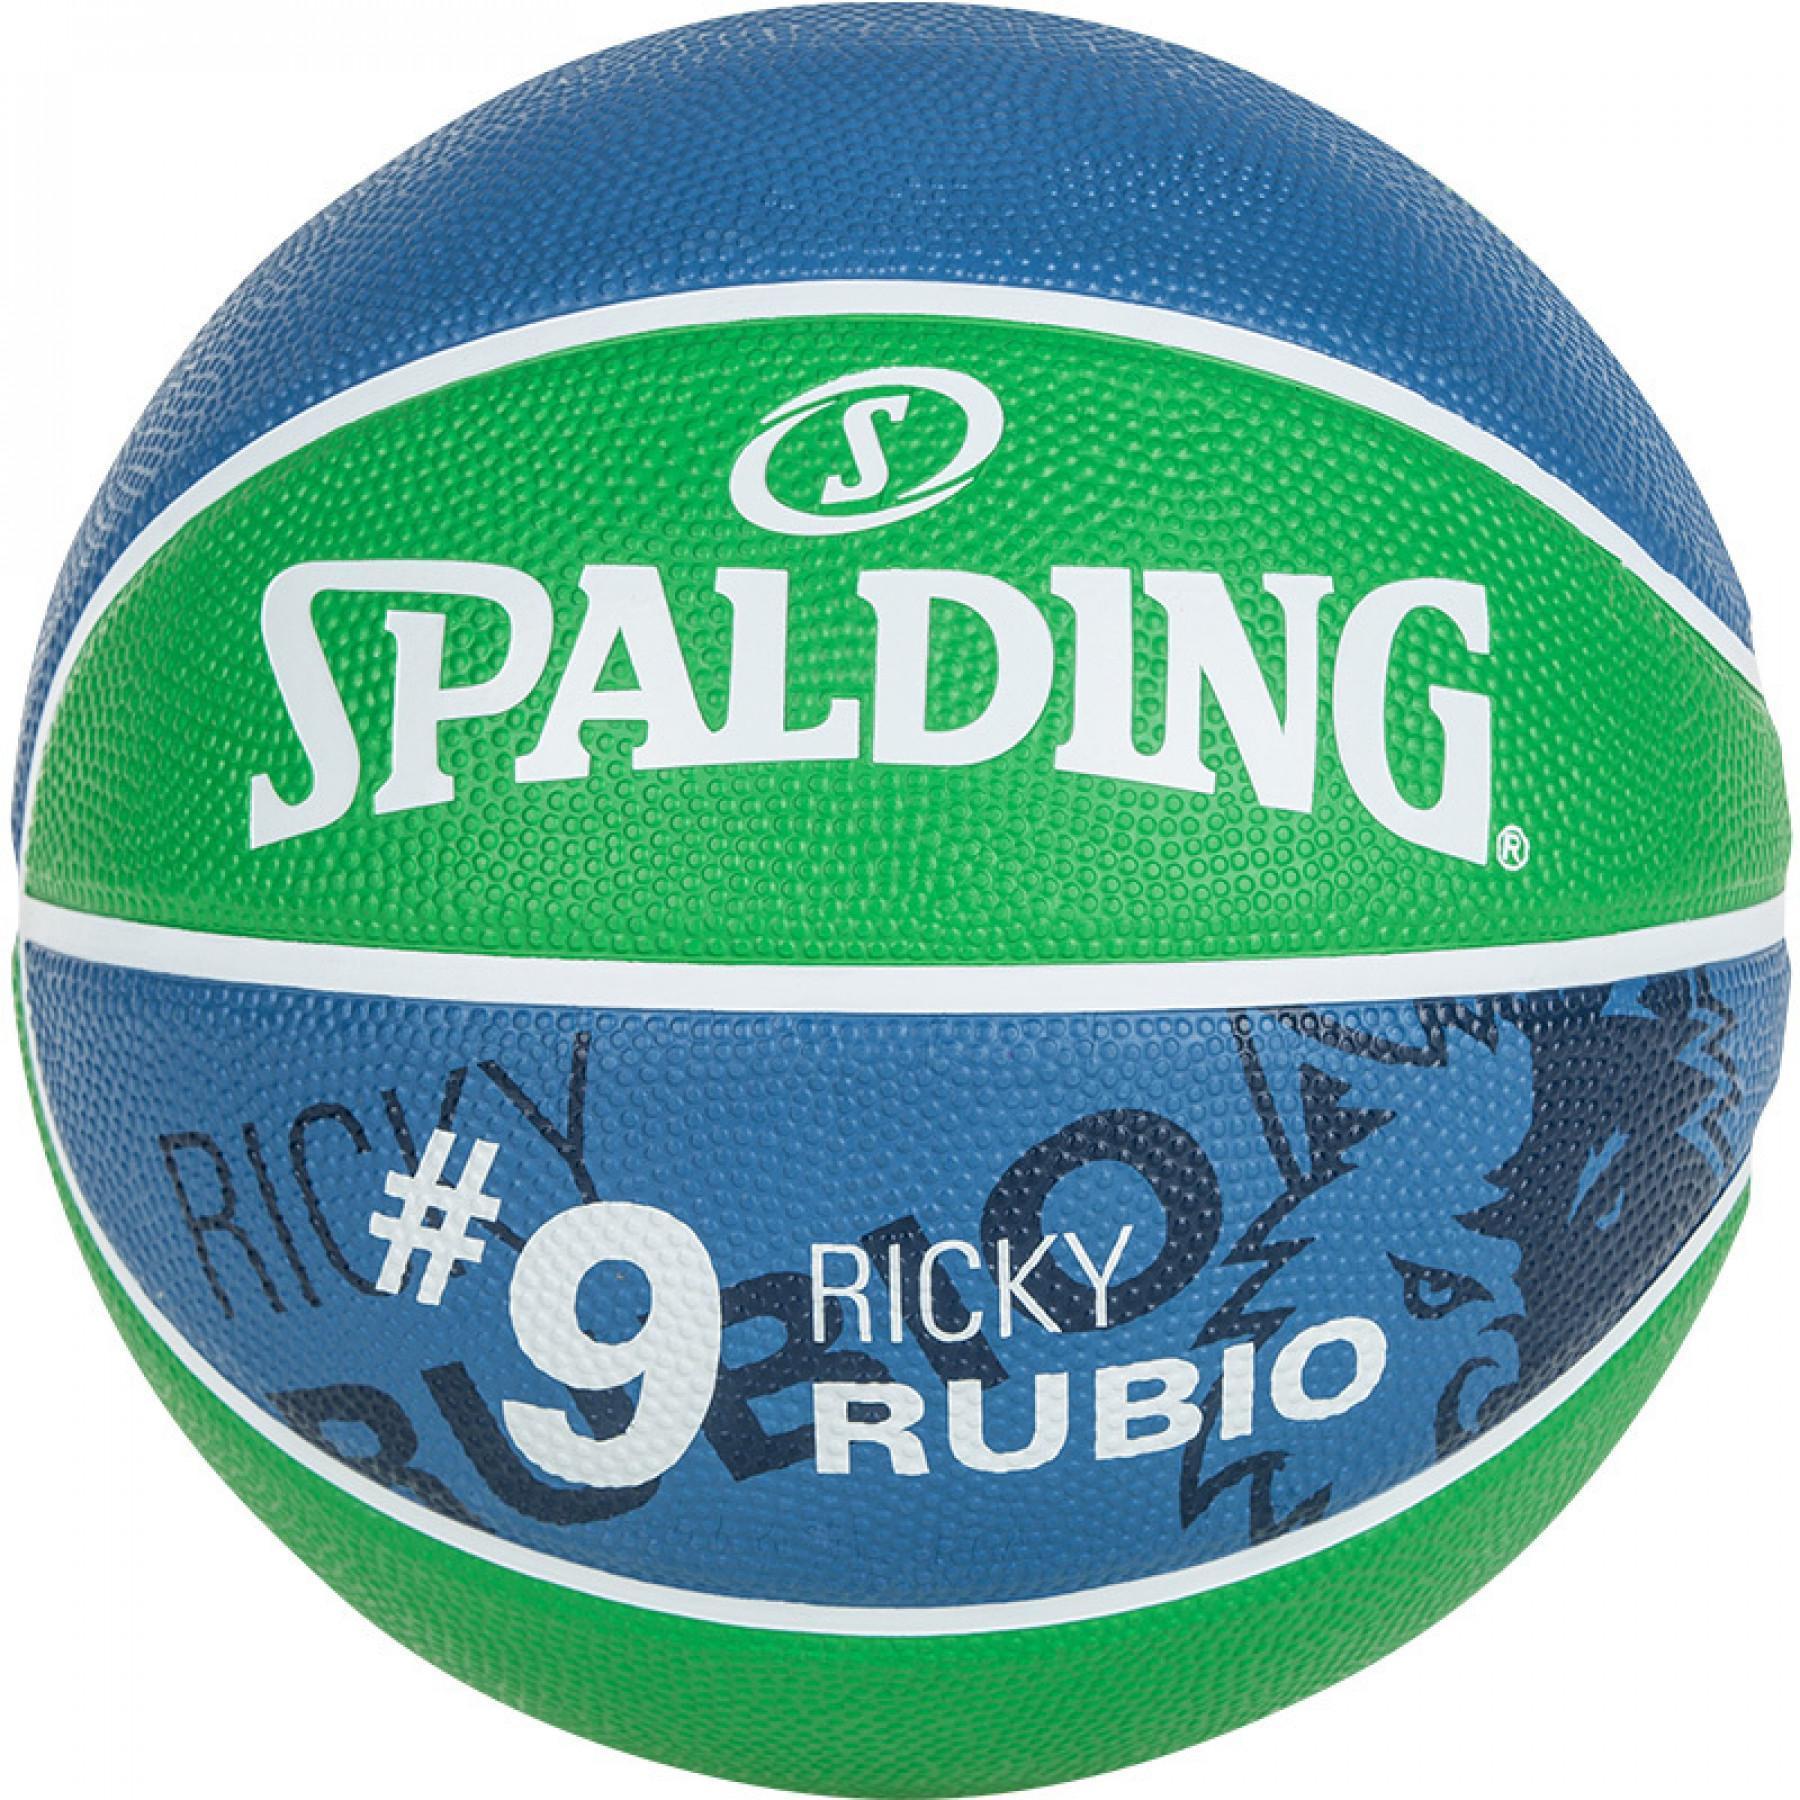 Ballon Spalding Player Ricky Rubio